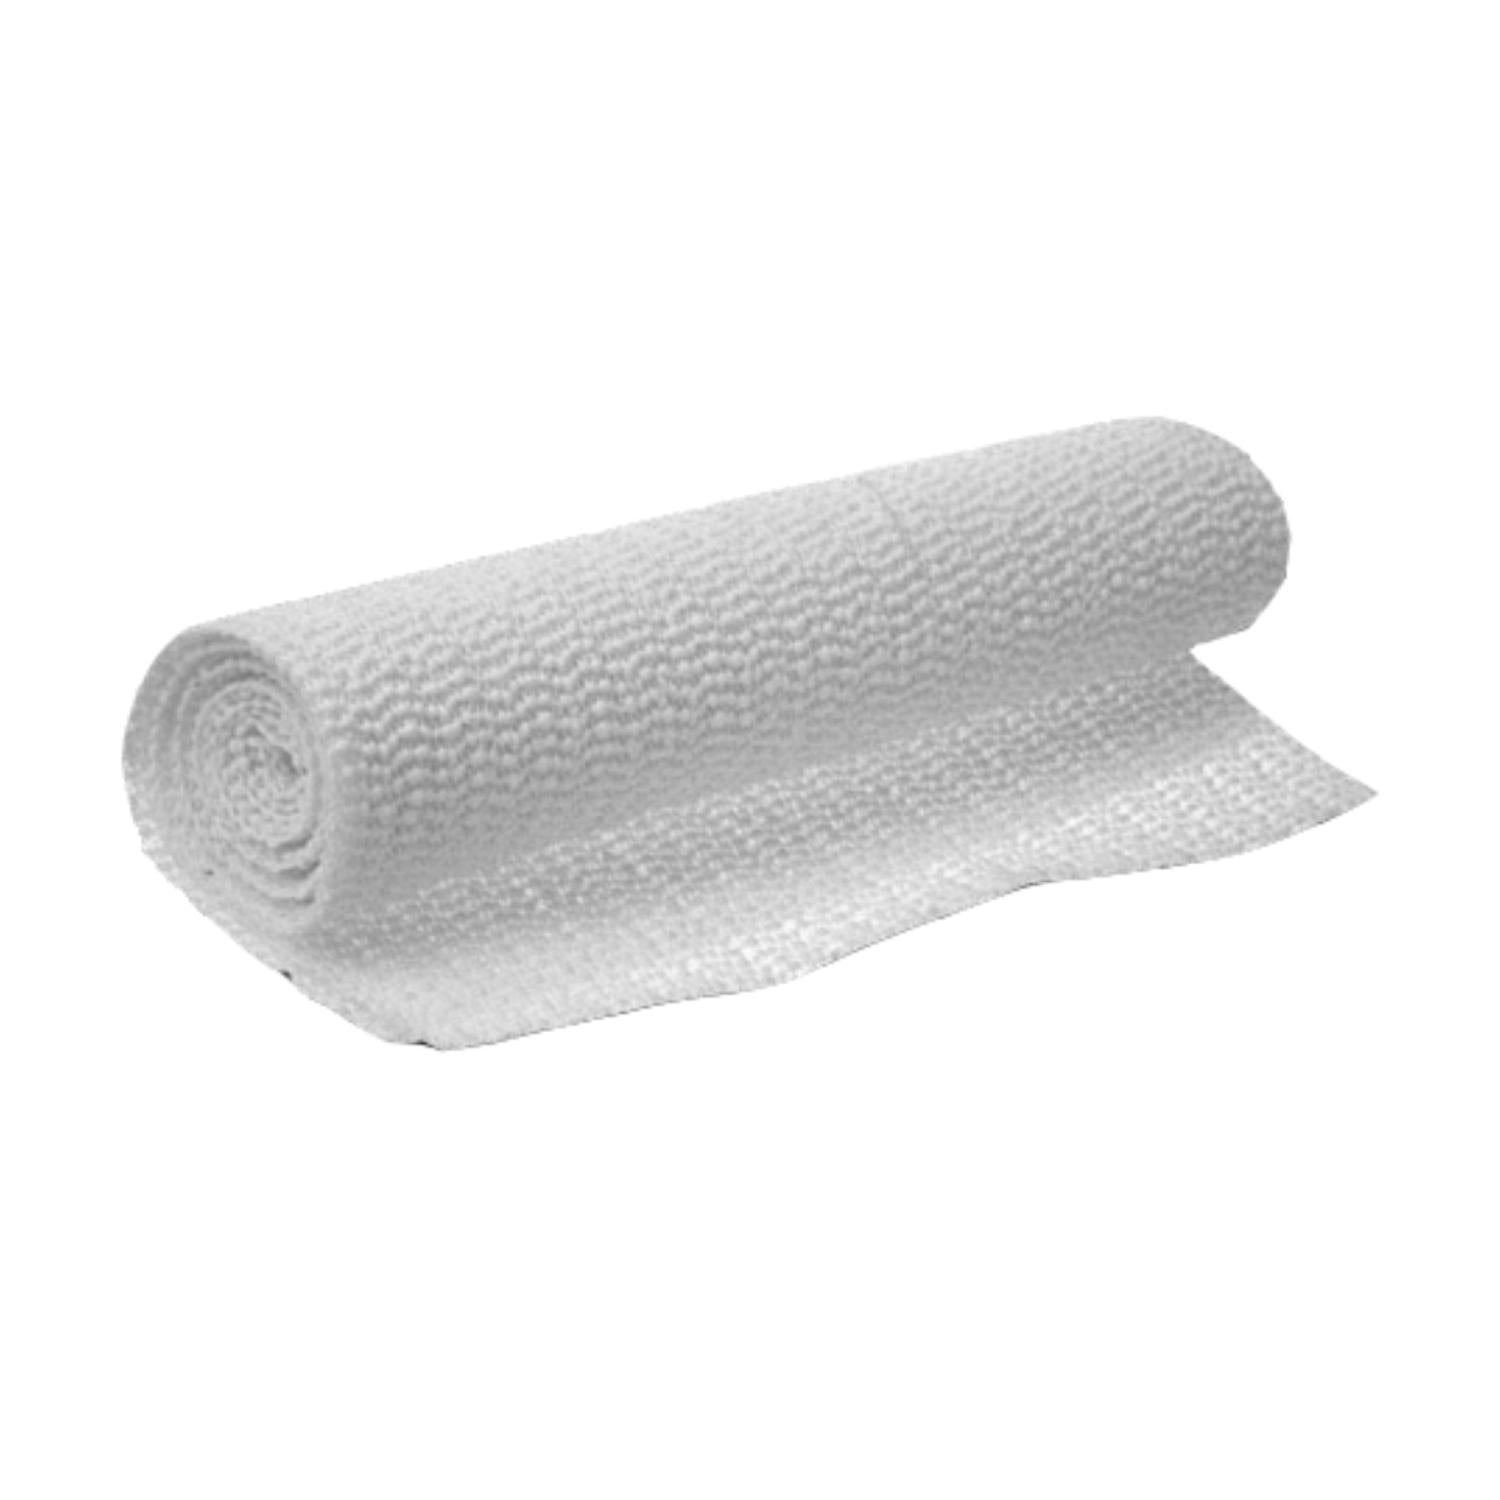 8: Anti-slip underlag til tæpper, 30 x 150 cm